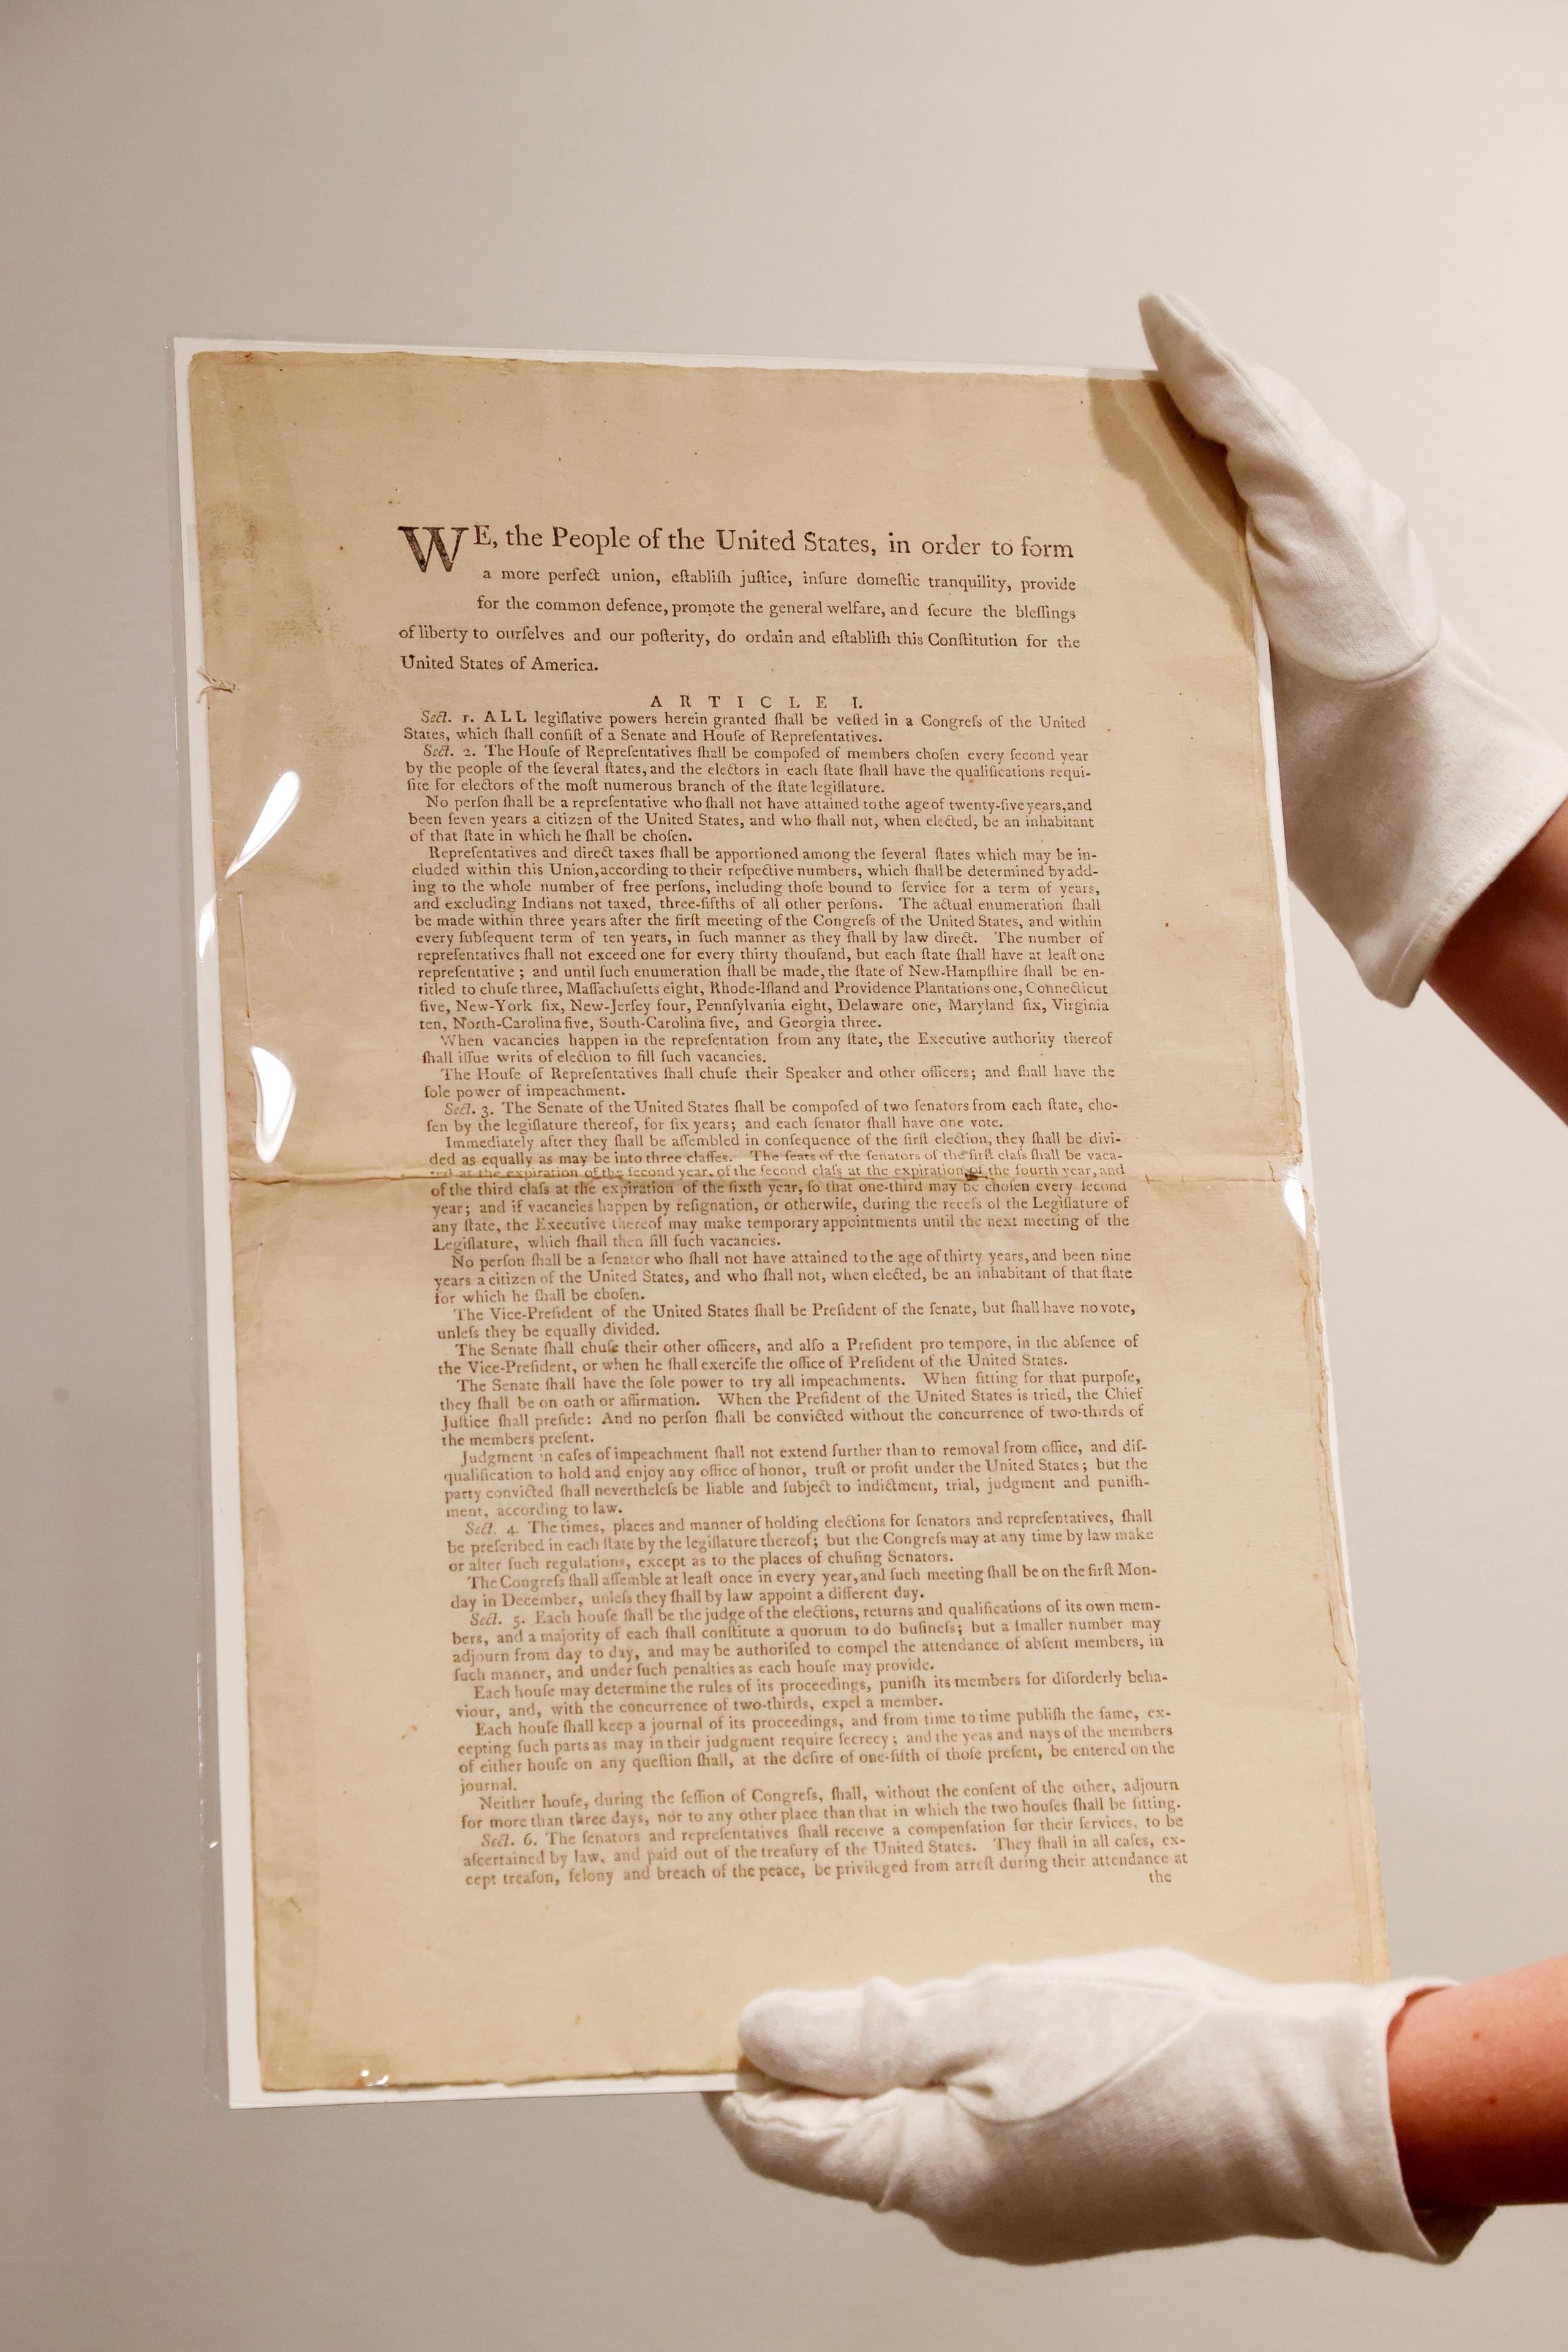 Copia impresa de la Constitución de los Estados Unidos que Sotheby's subastará en noviembre.